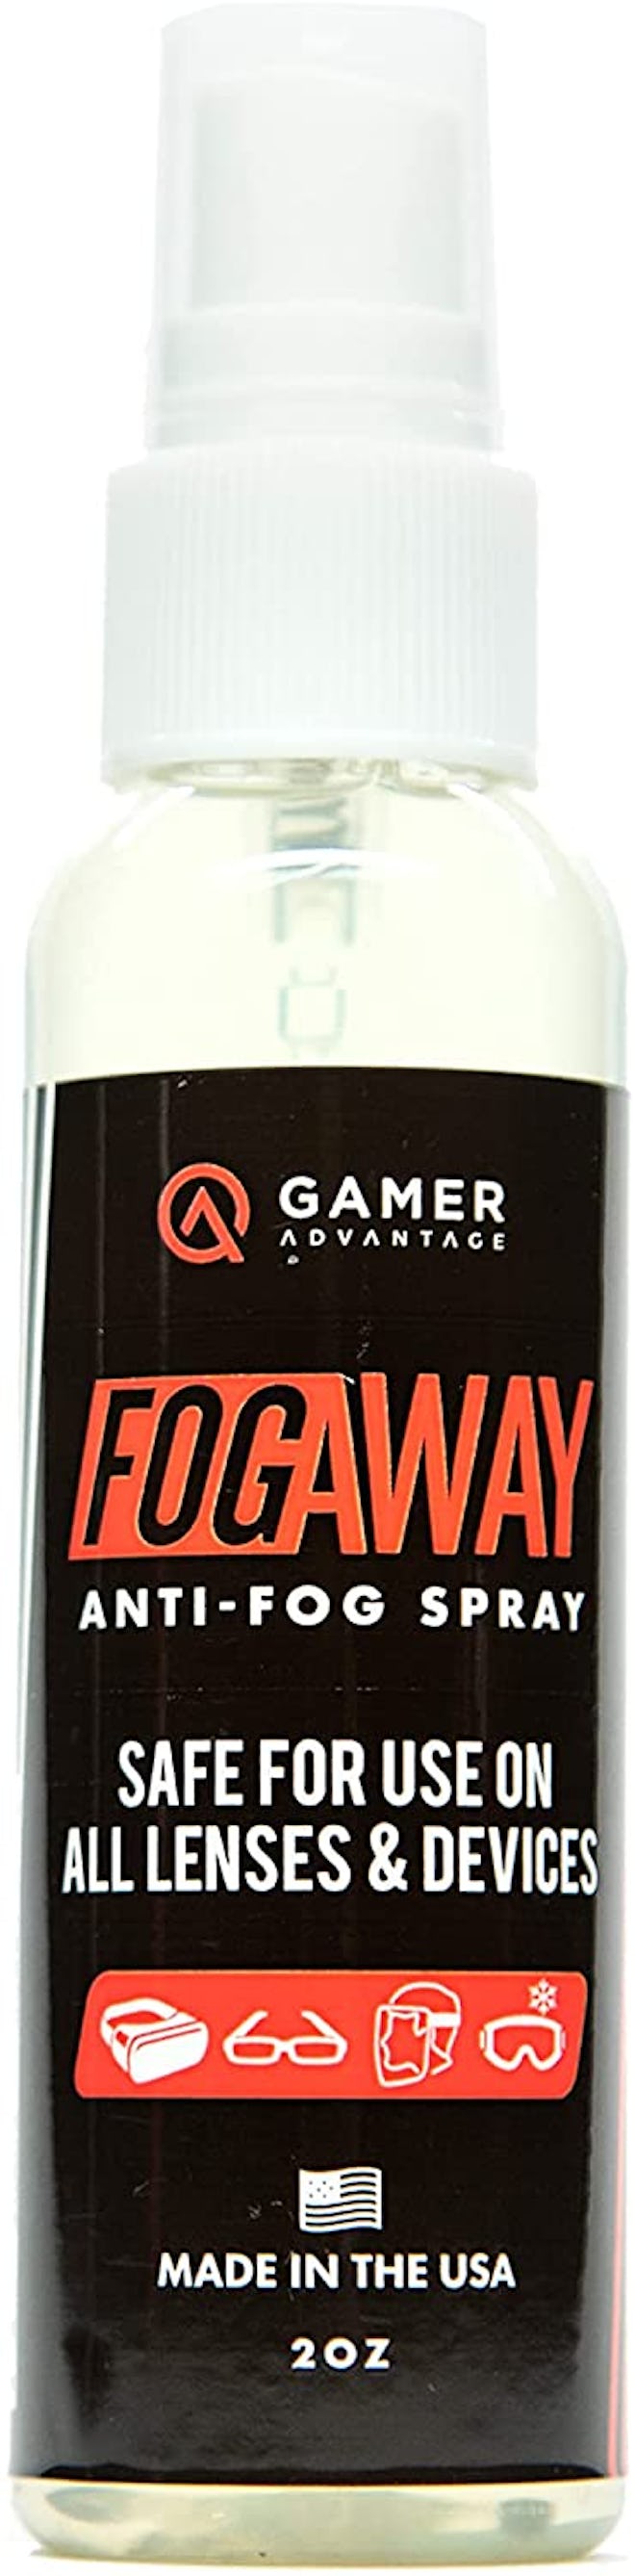 Gamer Advantage FogAway Anti-Fog Spray